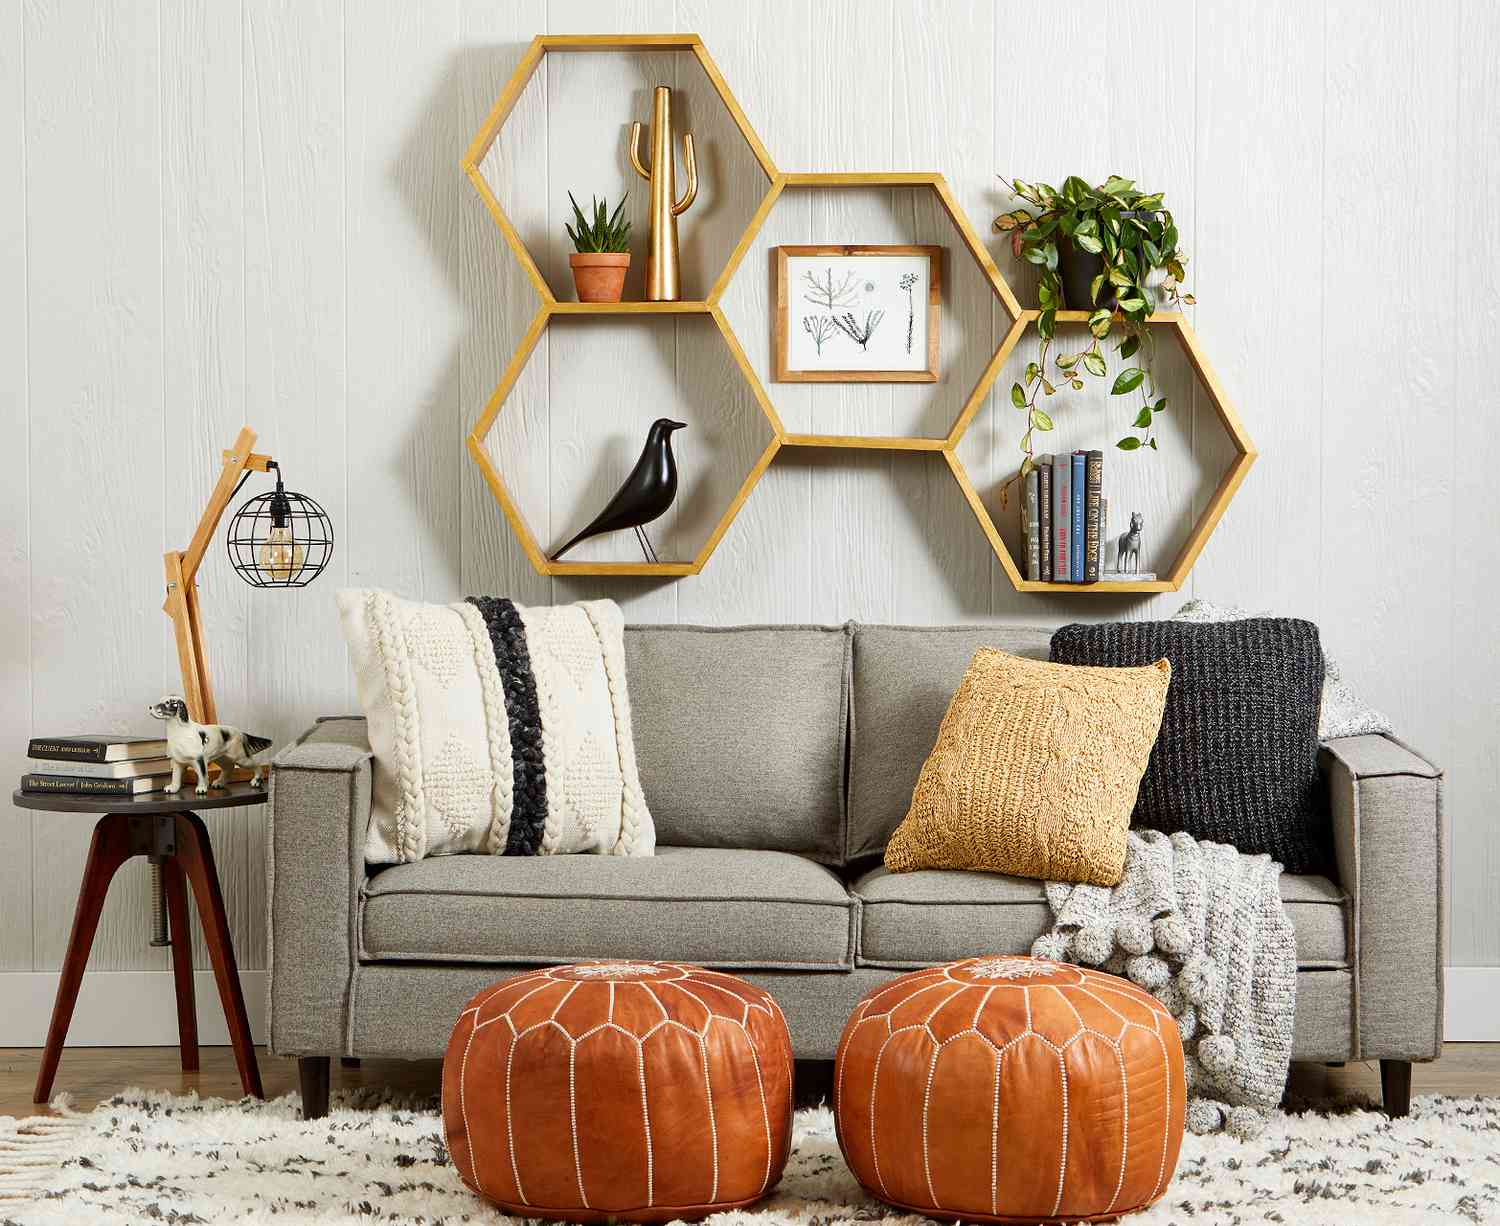 Diy Hexagon Shelves Better Homes, Octagon Shape Floating Shelves